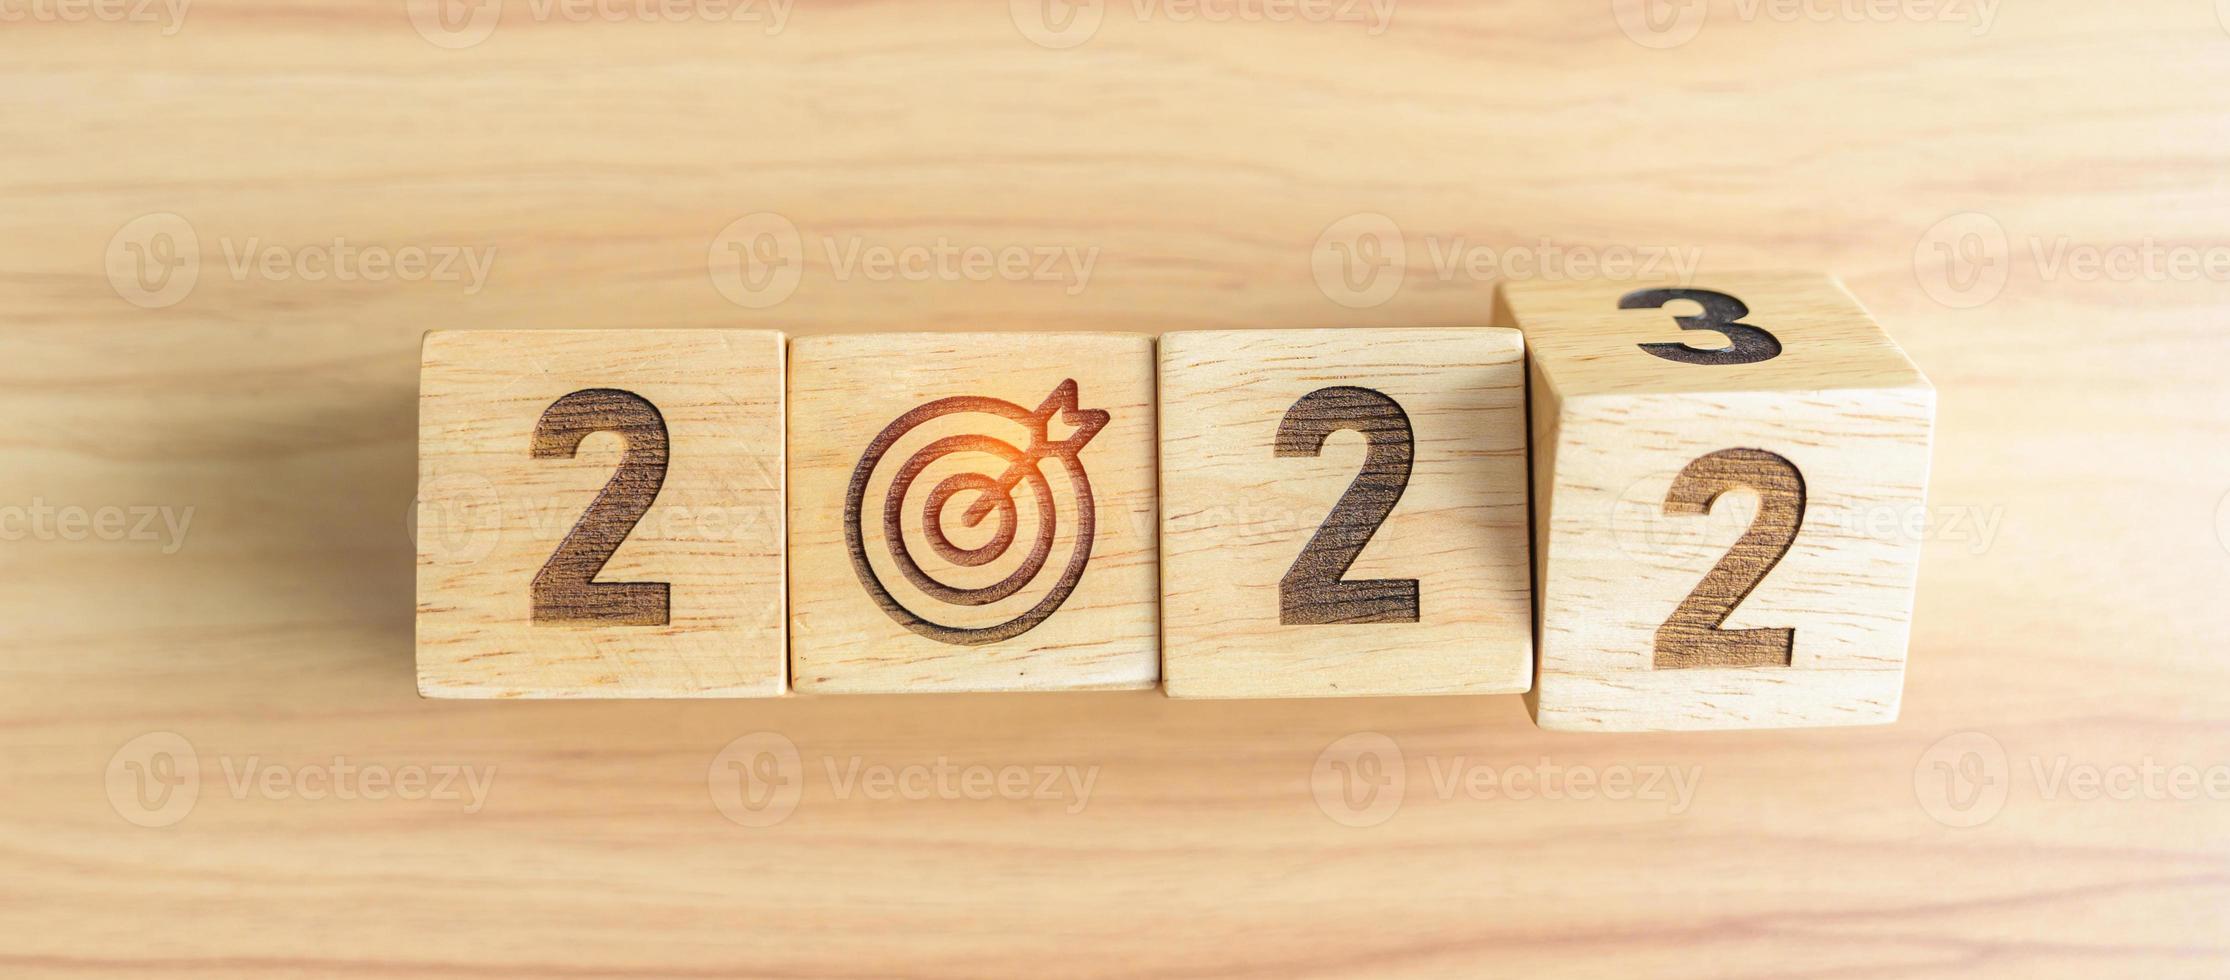 2022 passe au bloc de l'année 2023 avec l'icône du jeu de fléchettes. objectif, cible, résolution, stratégie, plan, action, mission, motivation et concepts de début de nouvelle année photo